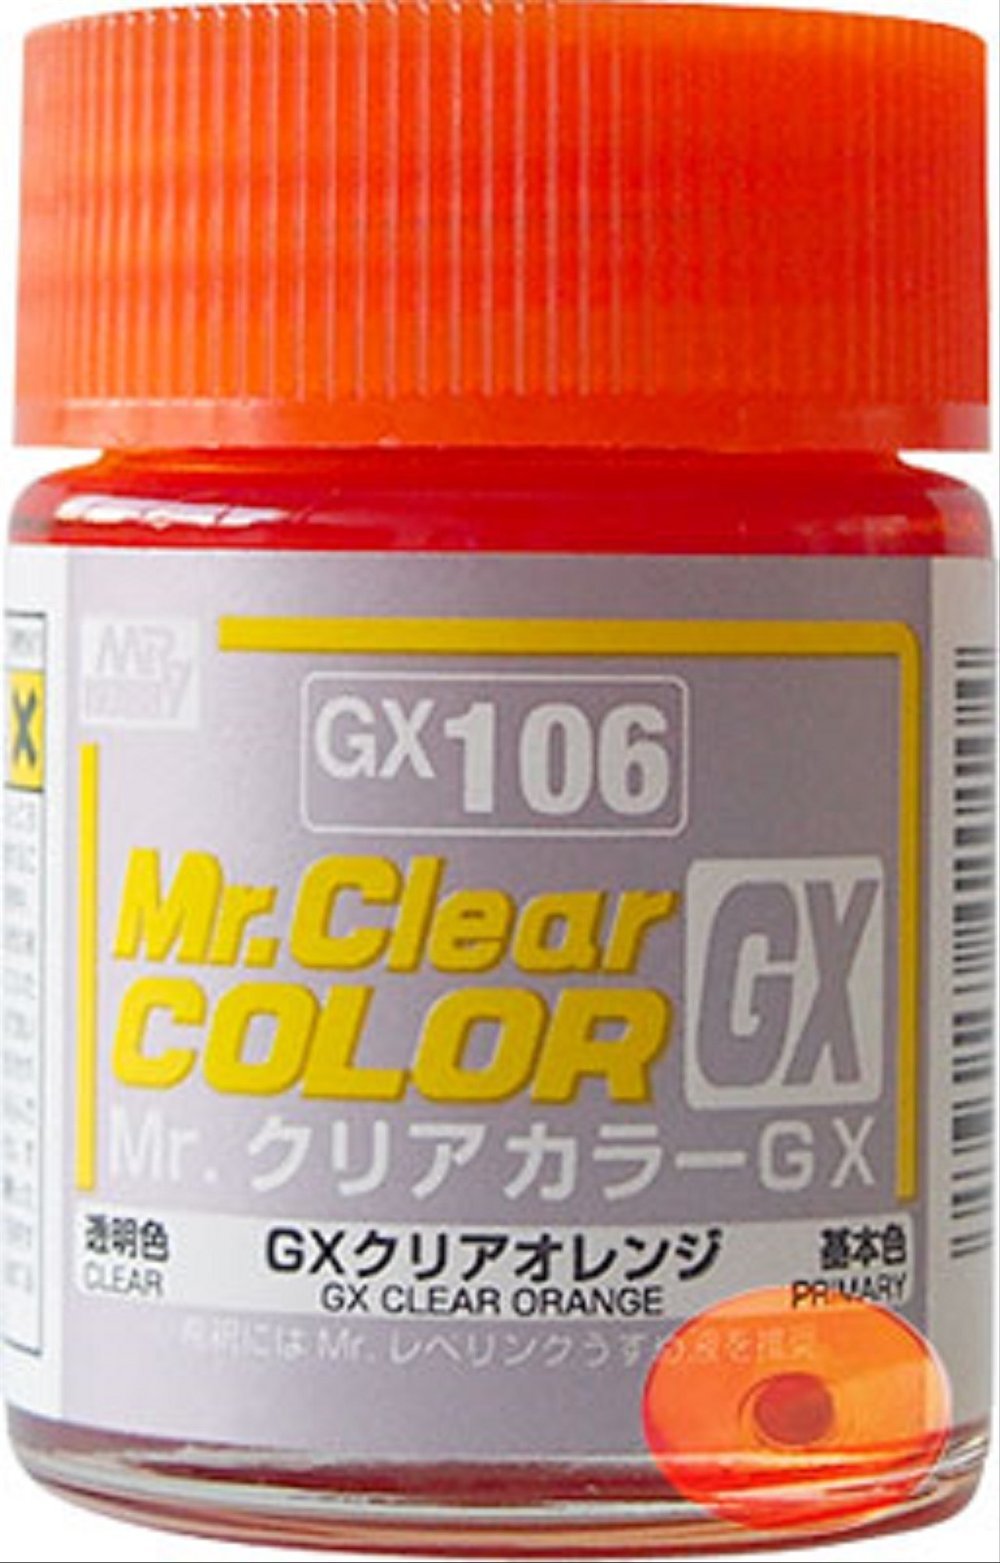 Mr_Clear_Color_GX_Clear_Orange___GX106.jpg